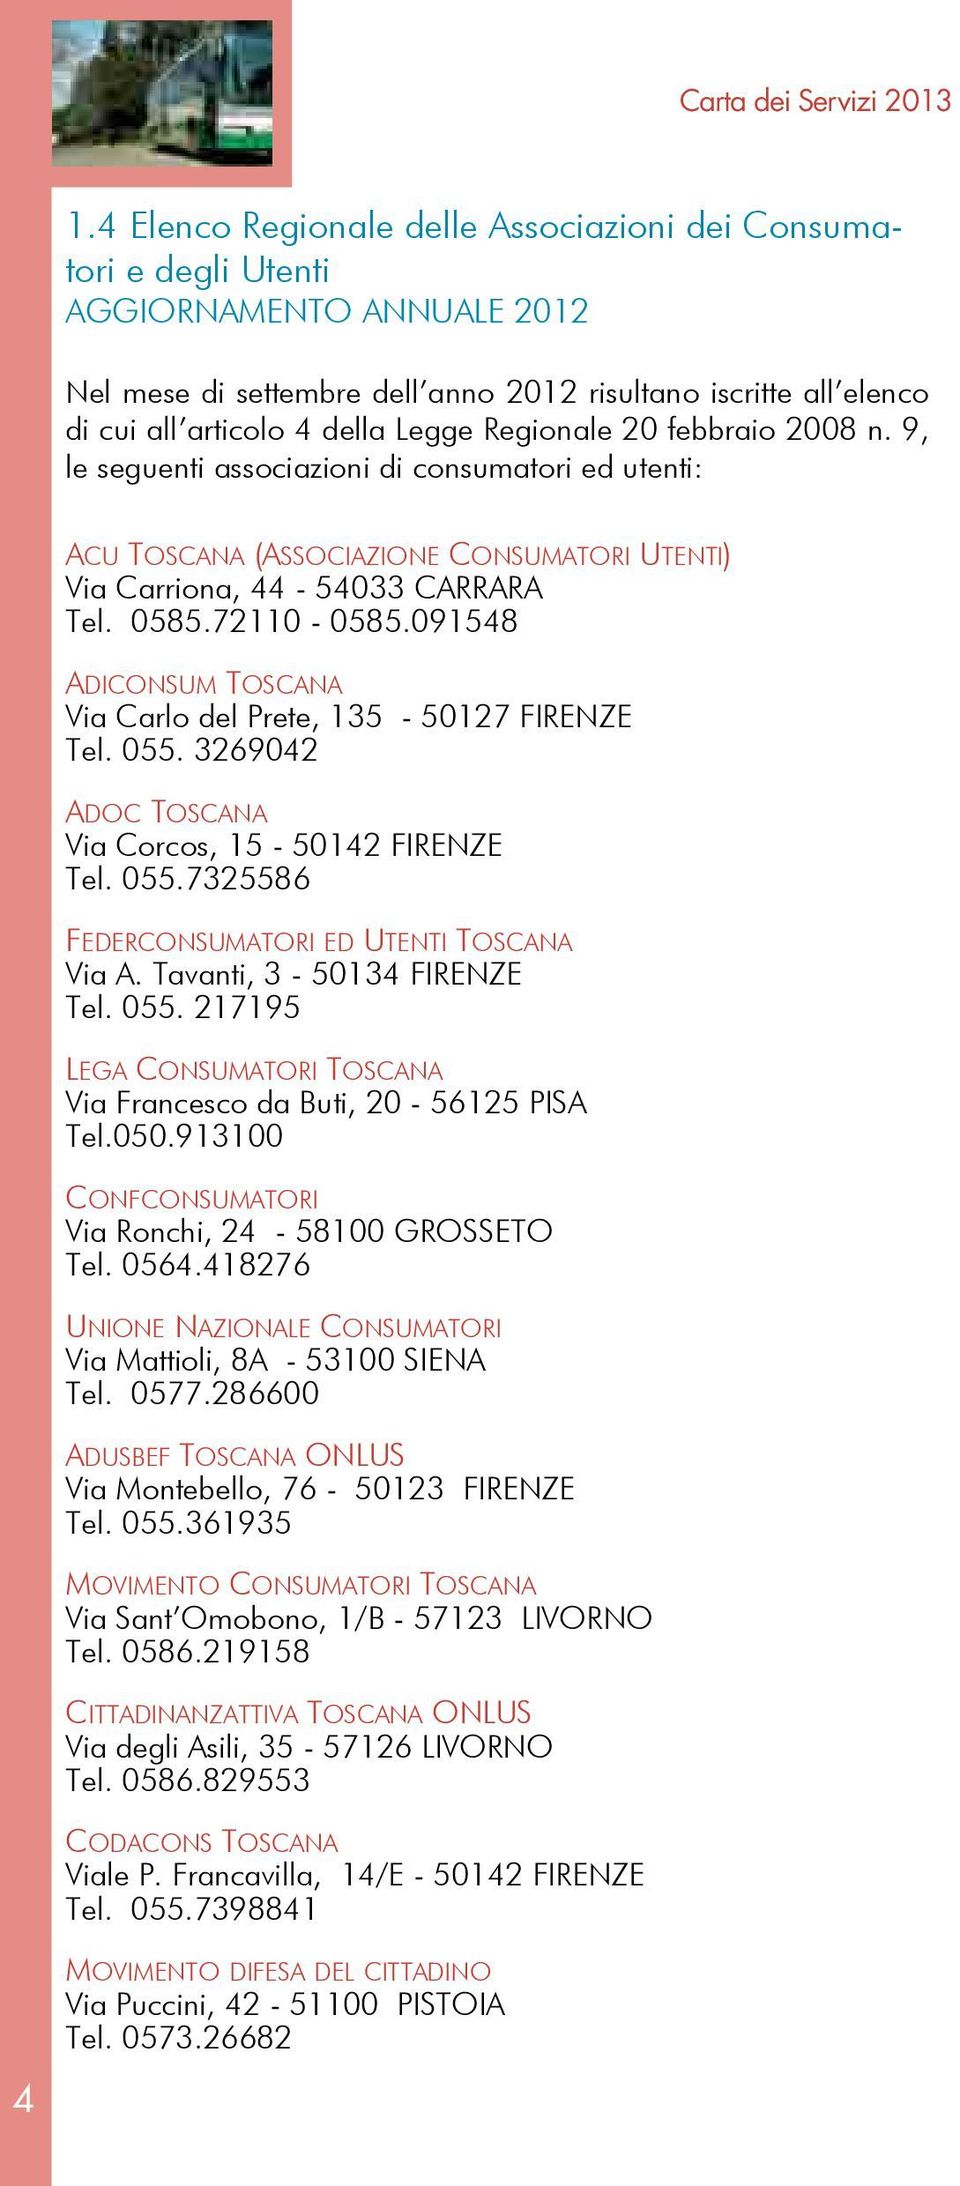 Regionale 20 febbraio 2008 n. 9, le seguenti associazioni di consumatori ed utenti: ACU TOSCANA (ASSOCIAZIONE CONSUMATORI UTENTI) Via Carriona, 44-54033 CARRARA Tel. 0585.72110-0585.